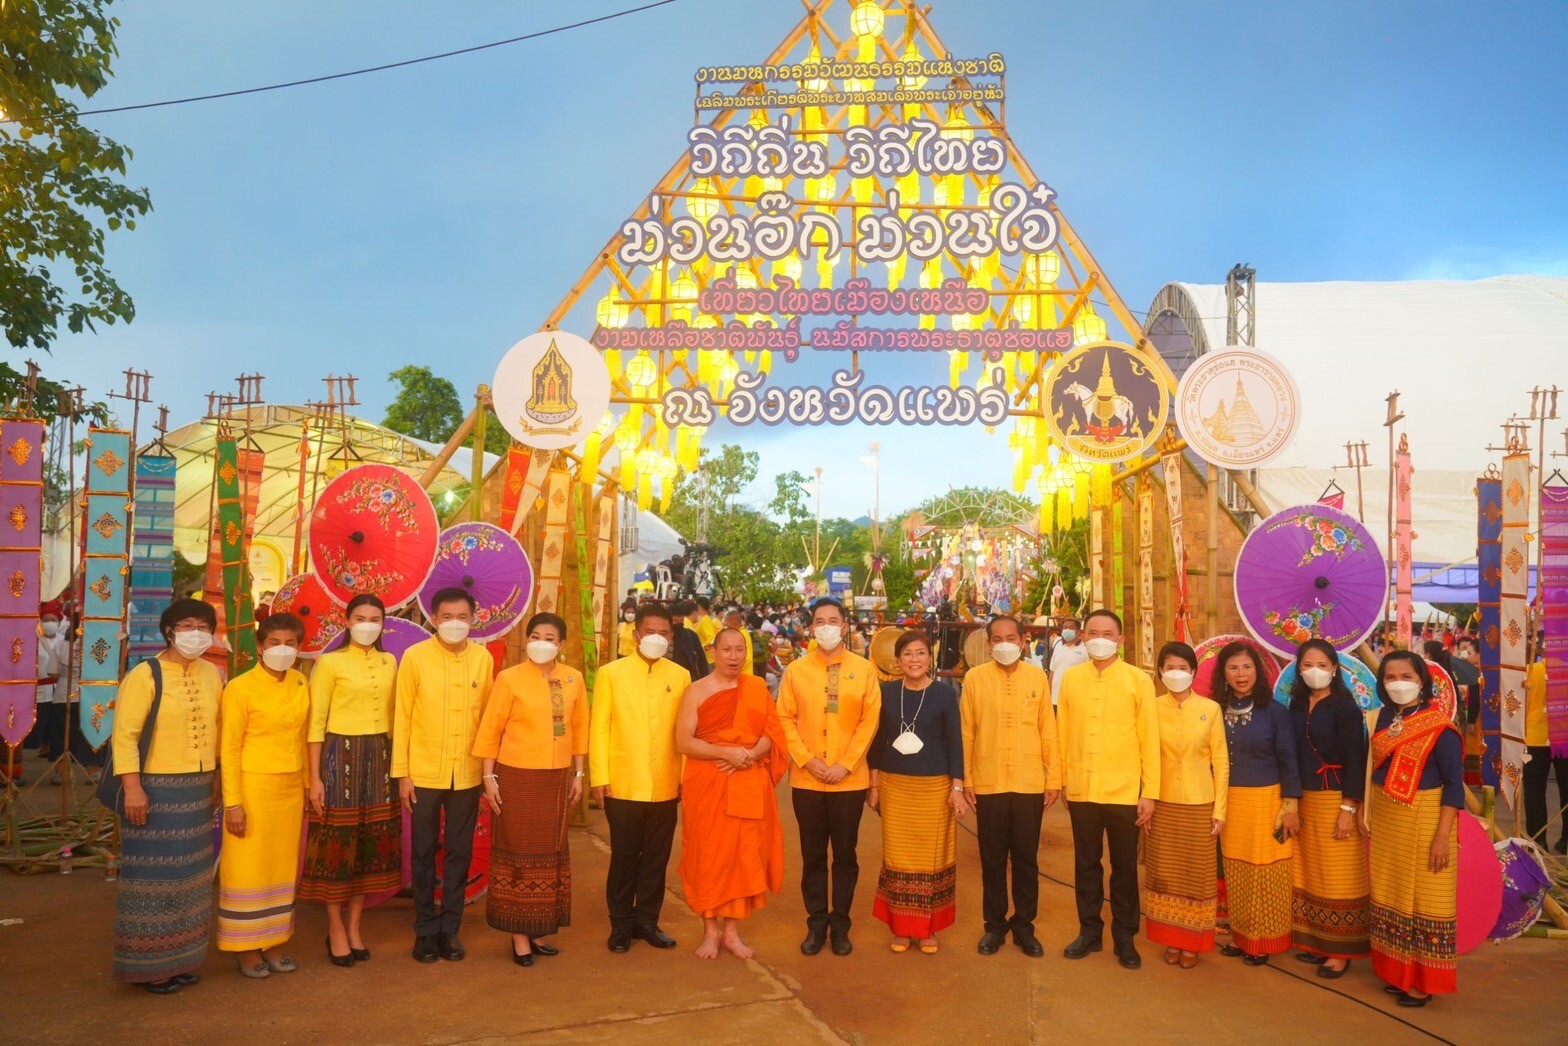 วธ.เปิดงาน มหกรรมวัฒนธรรมแห่งชาติ เฉลิมพระเกียรติพระบาทสมเด็จพระเจ้าอยู่หัว วิถีถิ่น วิถีไทย "ม่วนอ๊ก ม่วนใจ๋ เที่ยวไทยเมืองเหนือ งามเหลือชาติพันธุ์ นมัสการพระธาตุช่อแฮ"